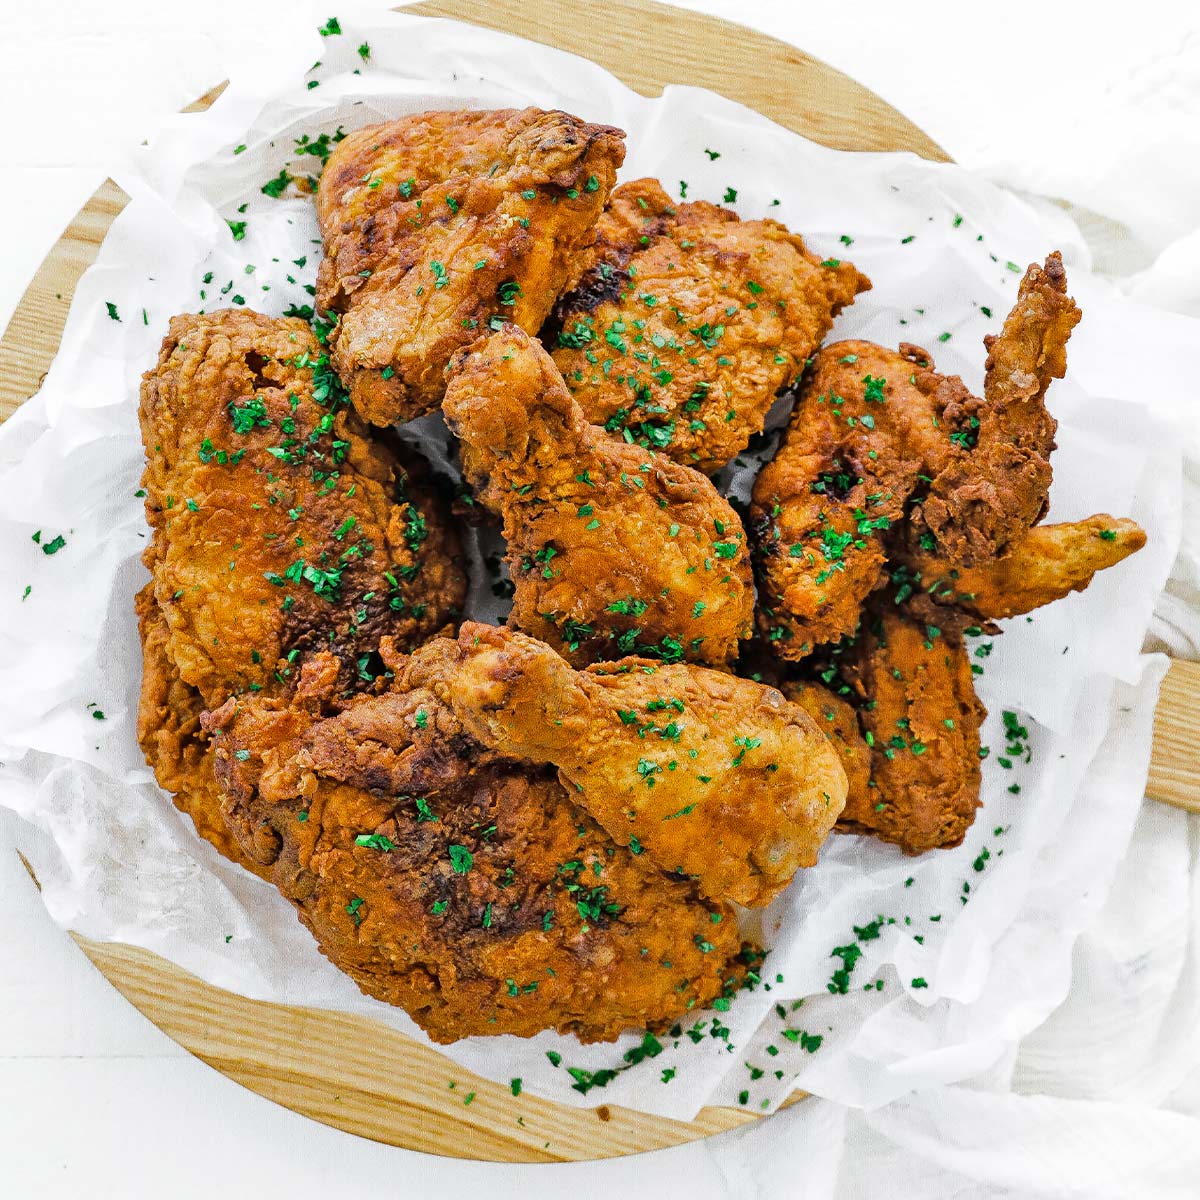 https://www.billyparisi.com/wp-content/uploads/2019/07/fried-chicken-1.jpg